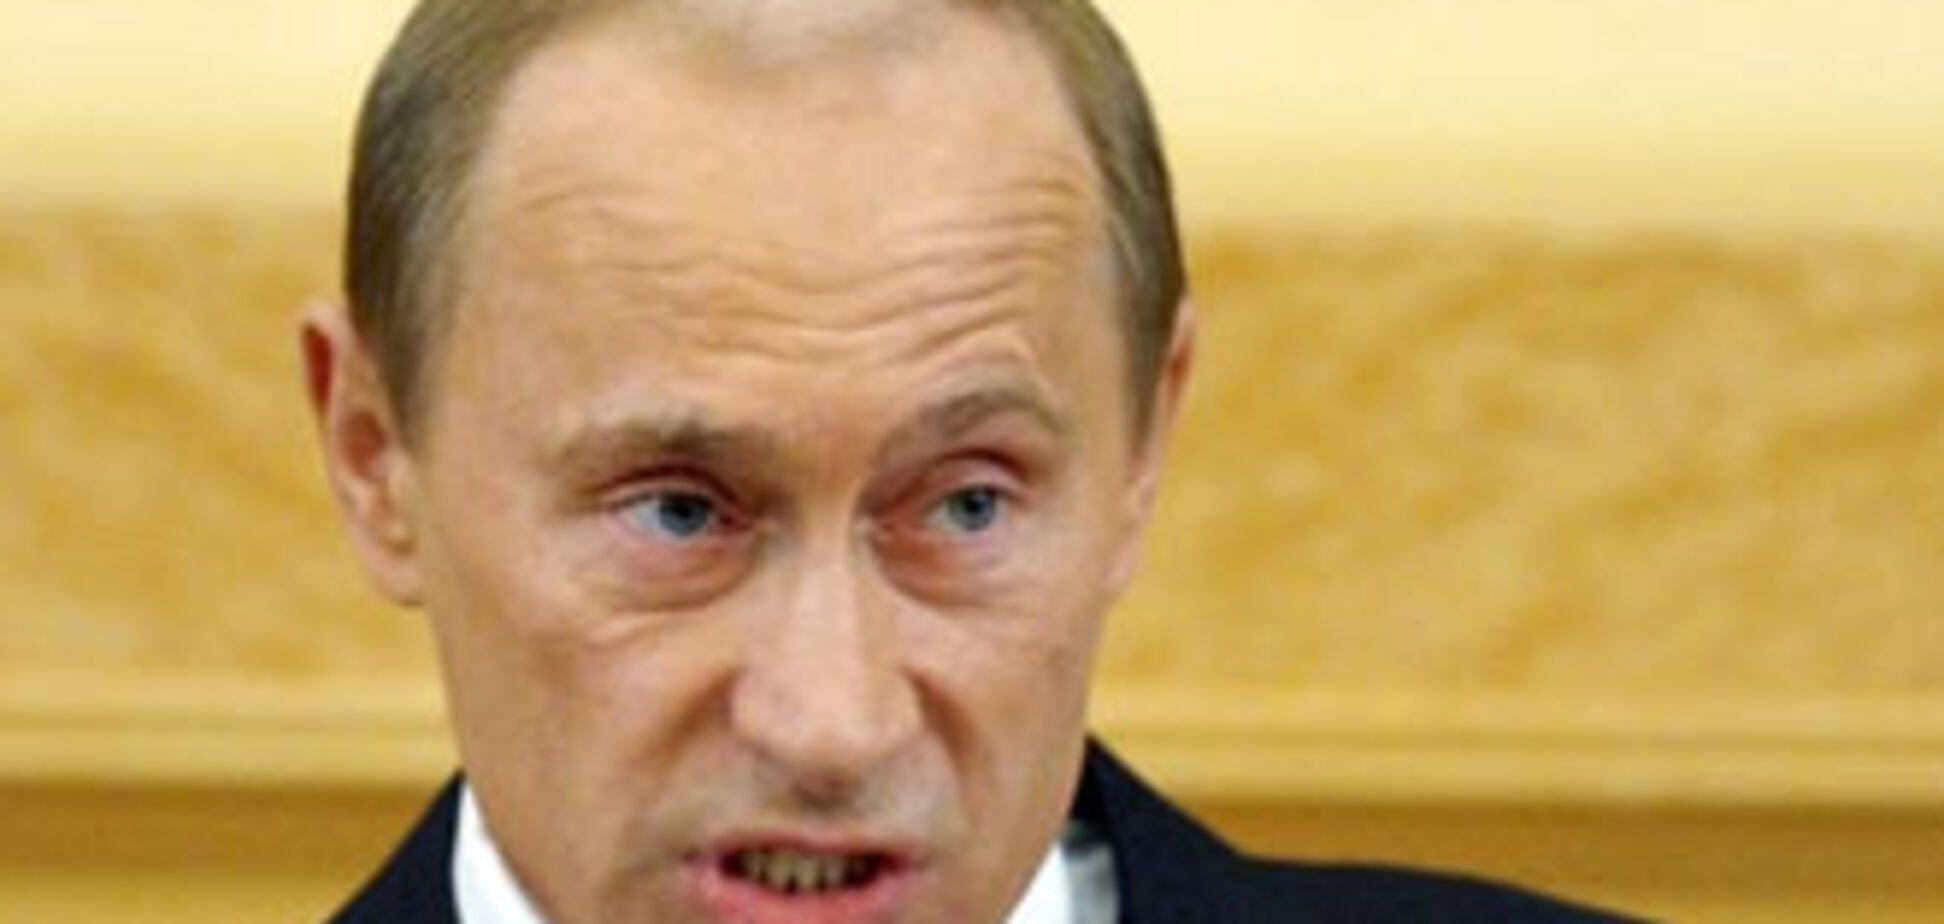 Следующим президентом России станет Путин?